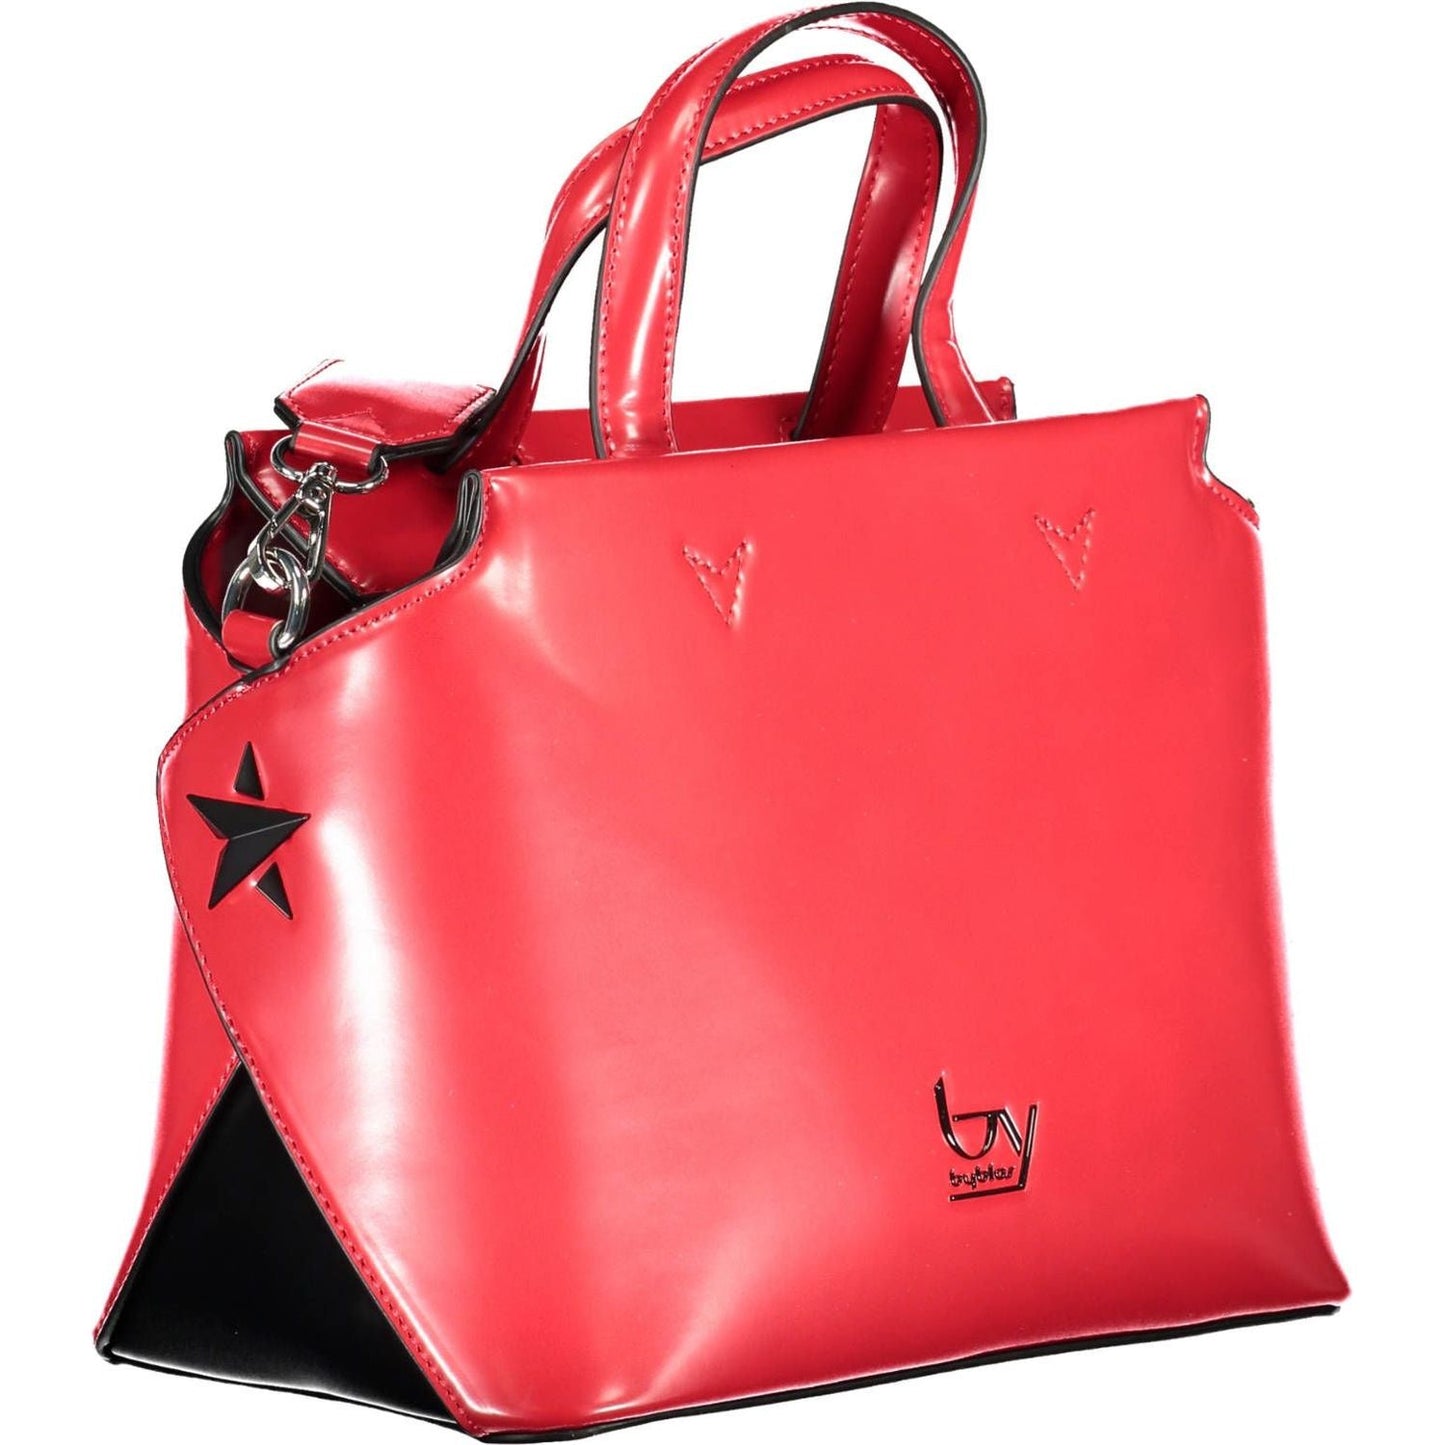 BYBLOS | Elegant Red Satchel with Contrasting Details| McRichard Designer Brands   